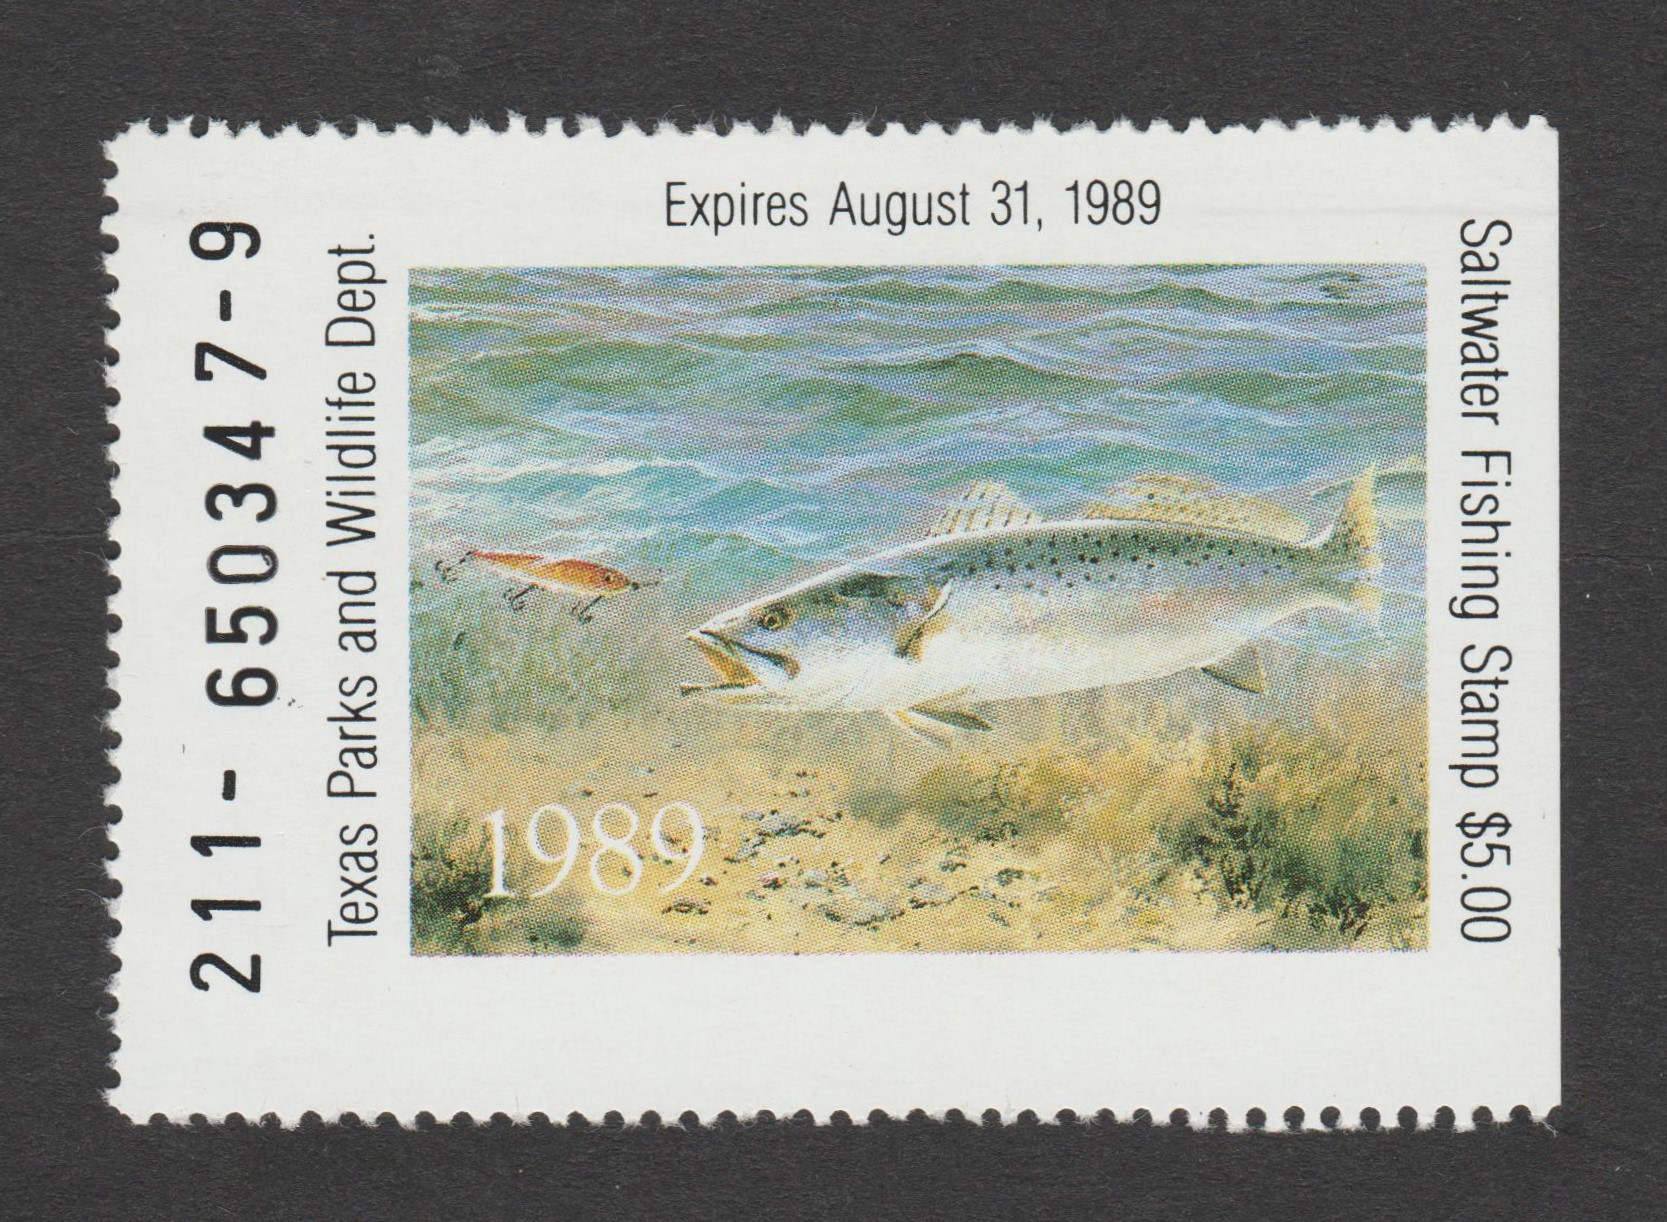 TX saltwater fishing FSW5 $5 MNH VF, 1989 P